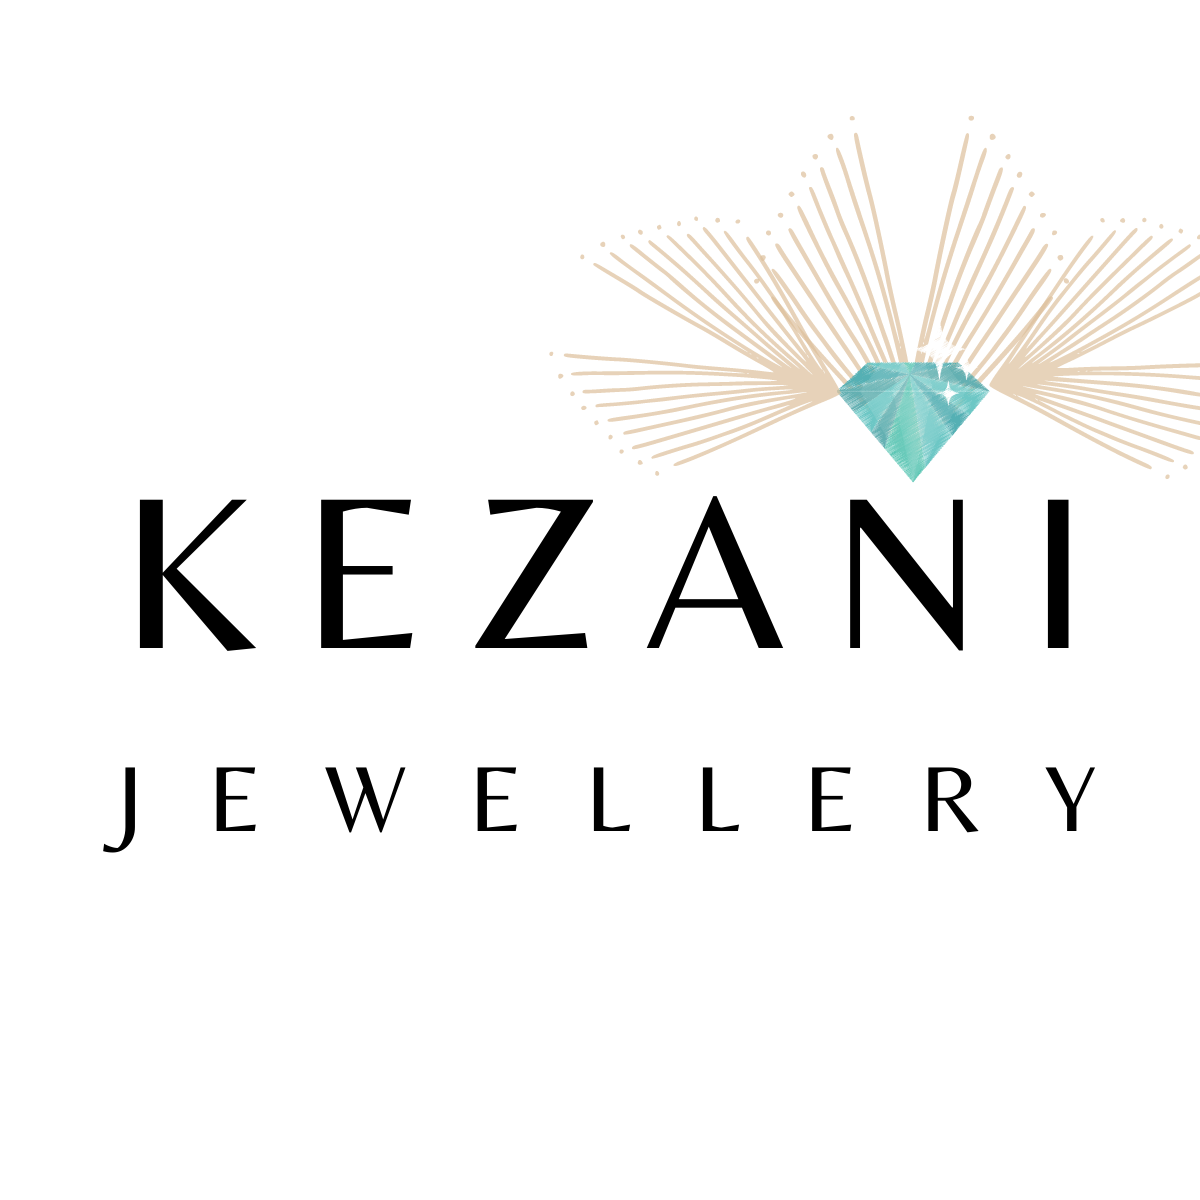 Company logo of Kezani Jewellery